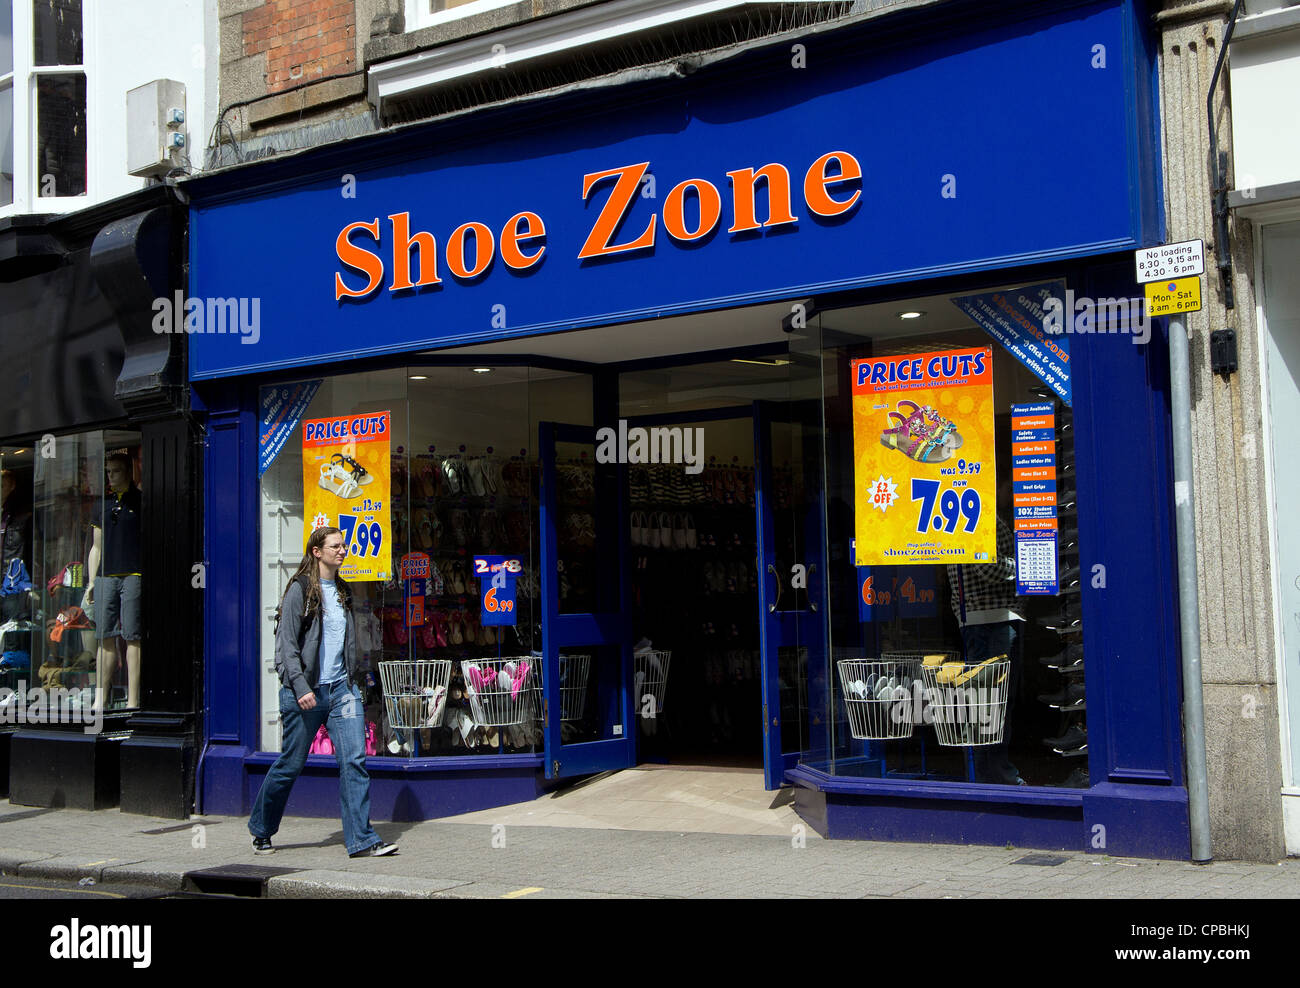 Shoe Zone discount shoe shop, uk Stock Photo